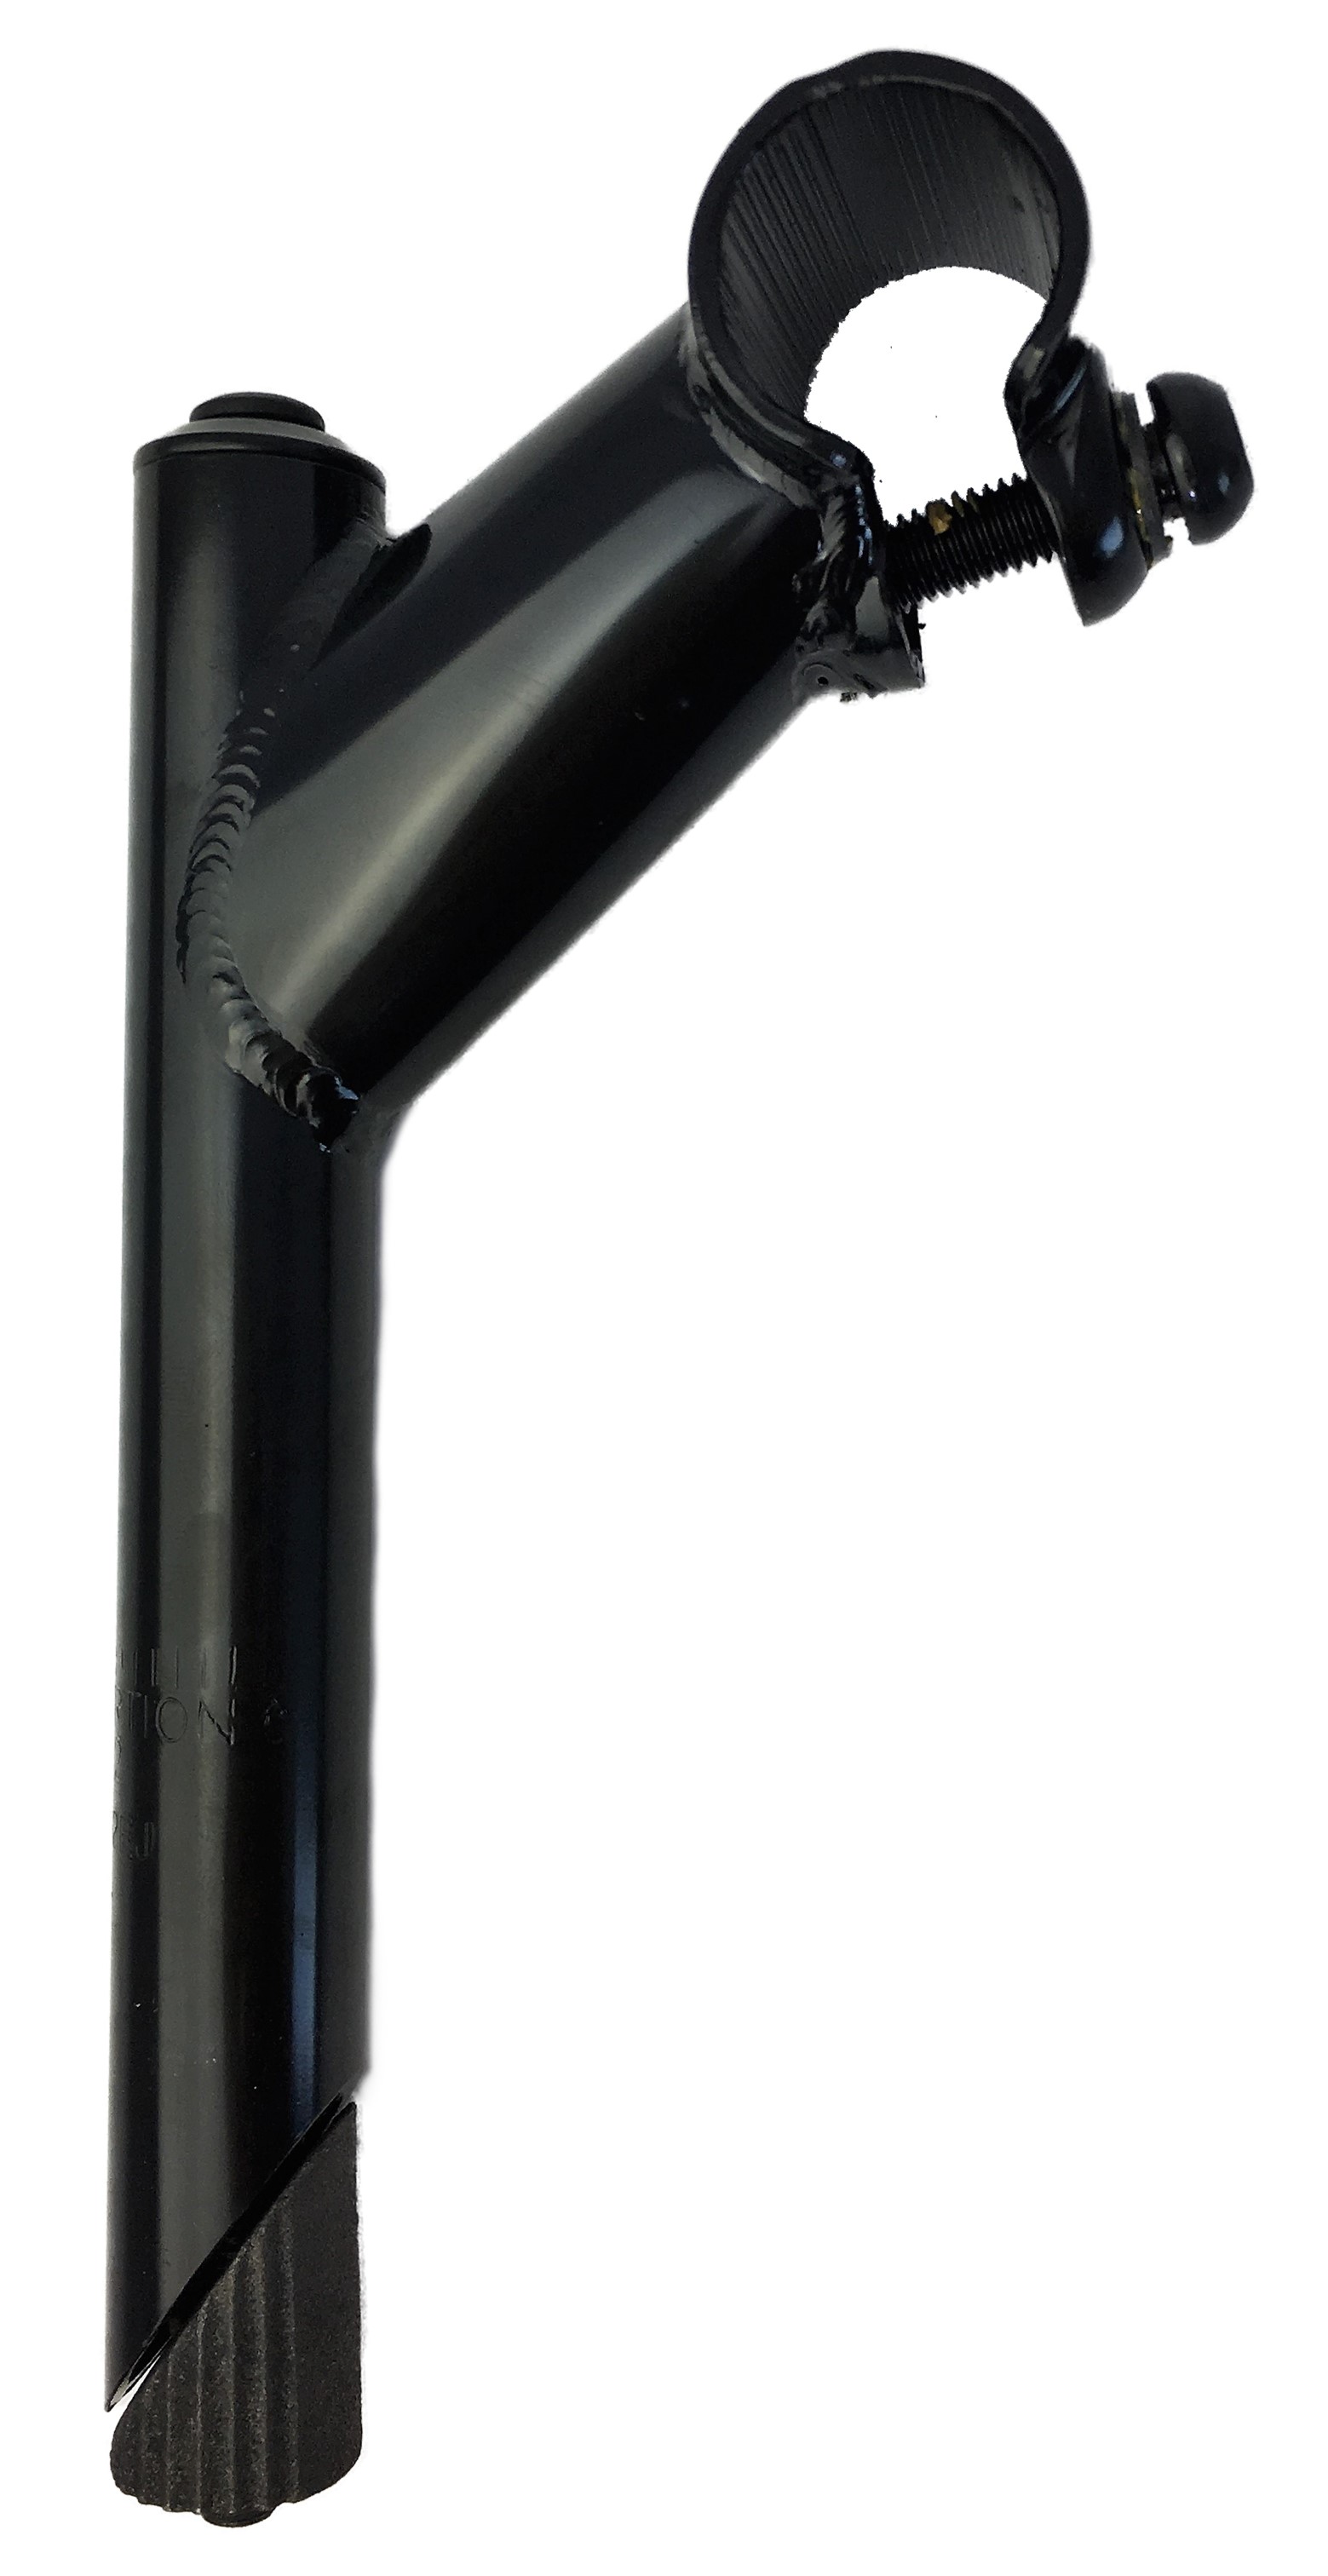 Tija del manillar  25,4 - 22,2, eje de acero con sujeción mediante 1 tornillo en negro Humpert Ergotec CV 102